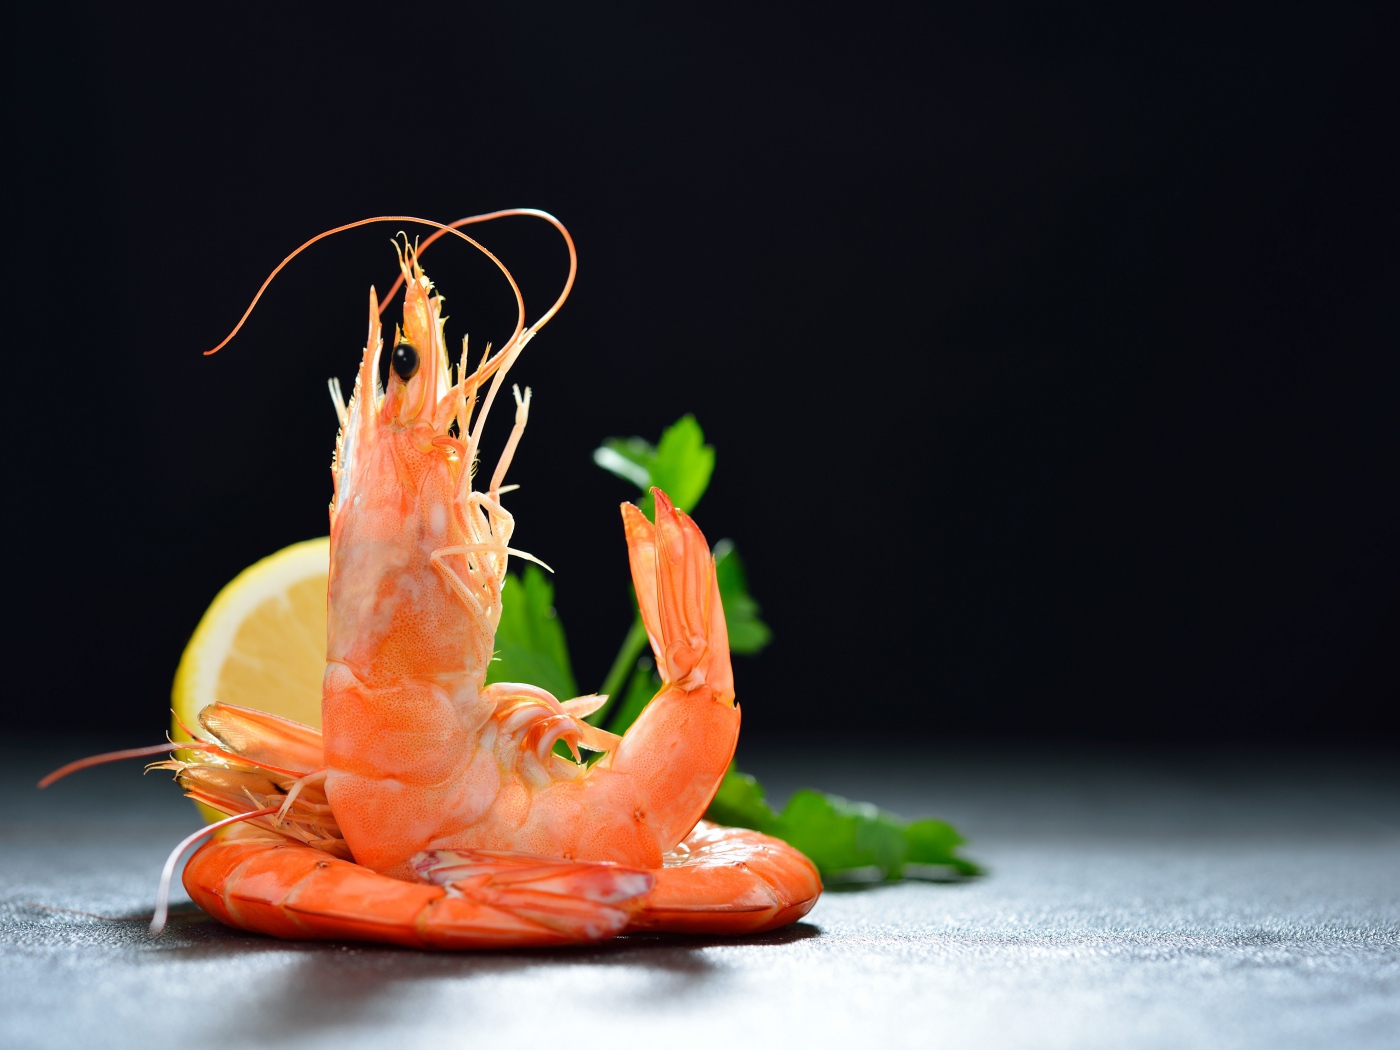 Boiled shrimp with lemon on a black background